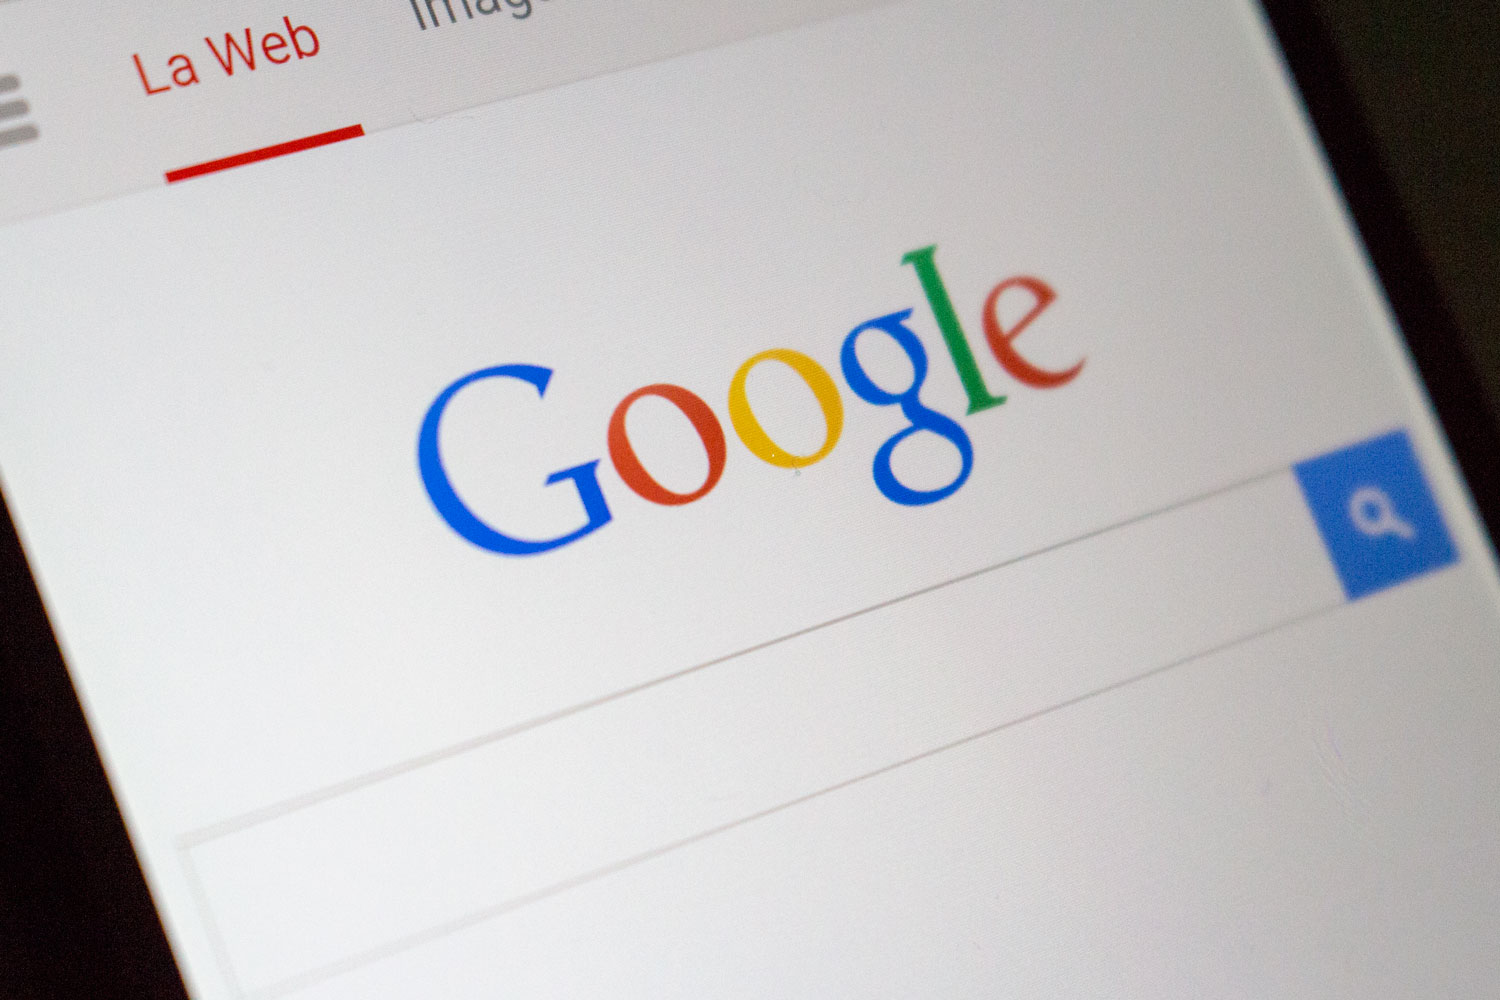 Comandos de búsqueda avanzada en Google